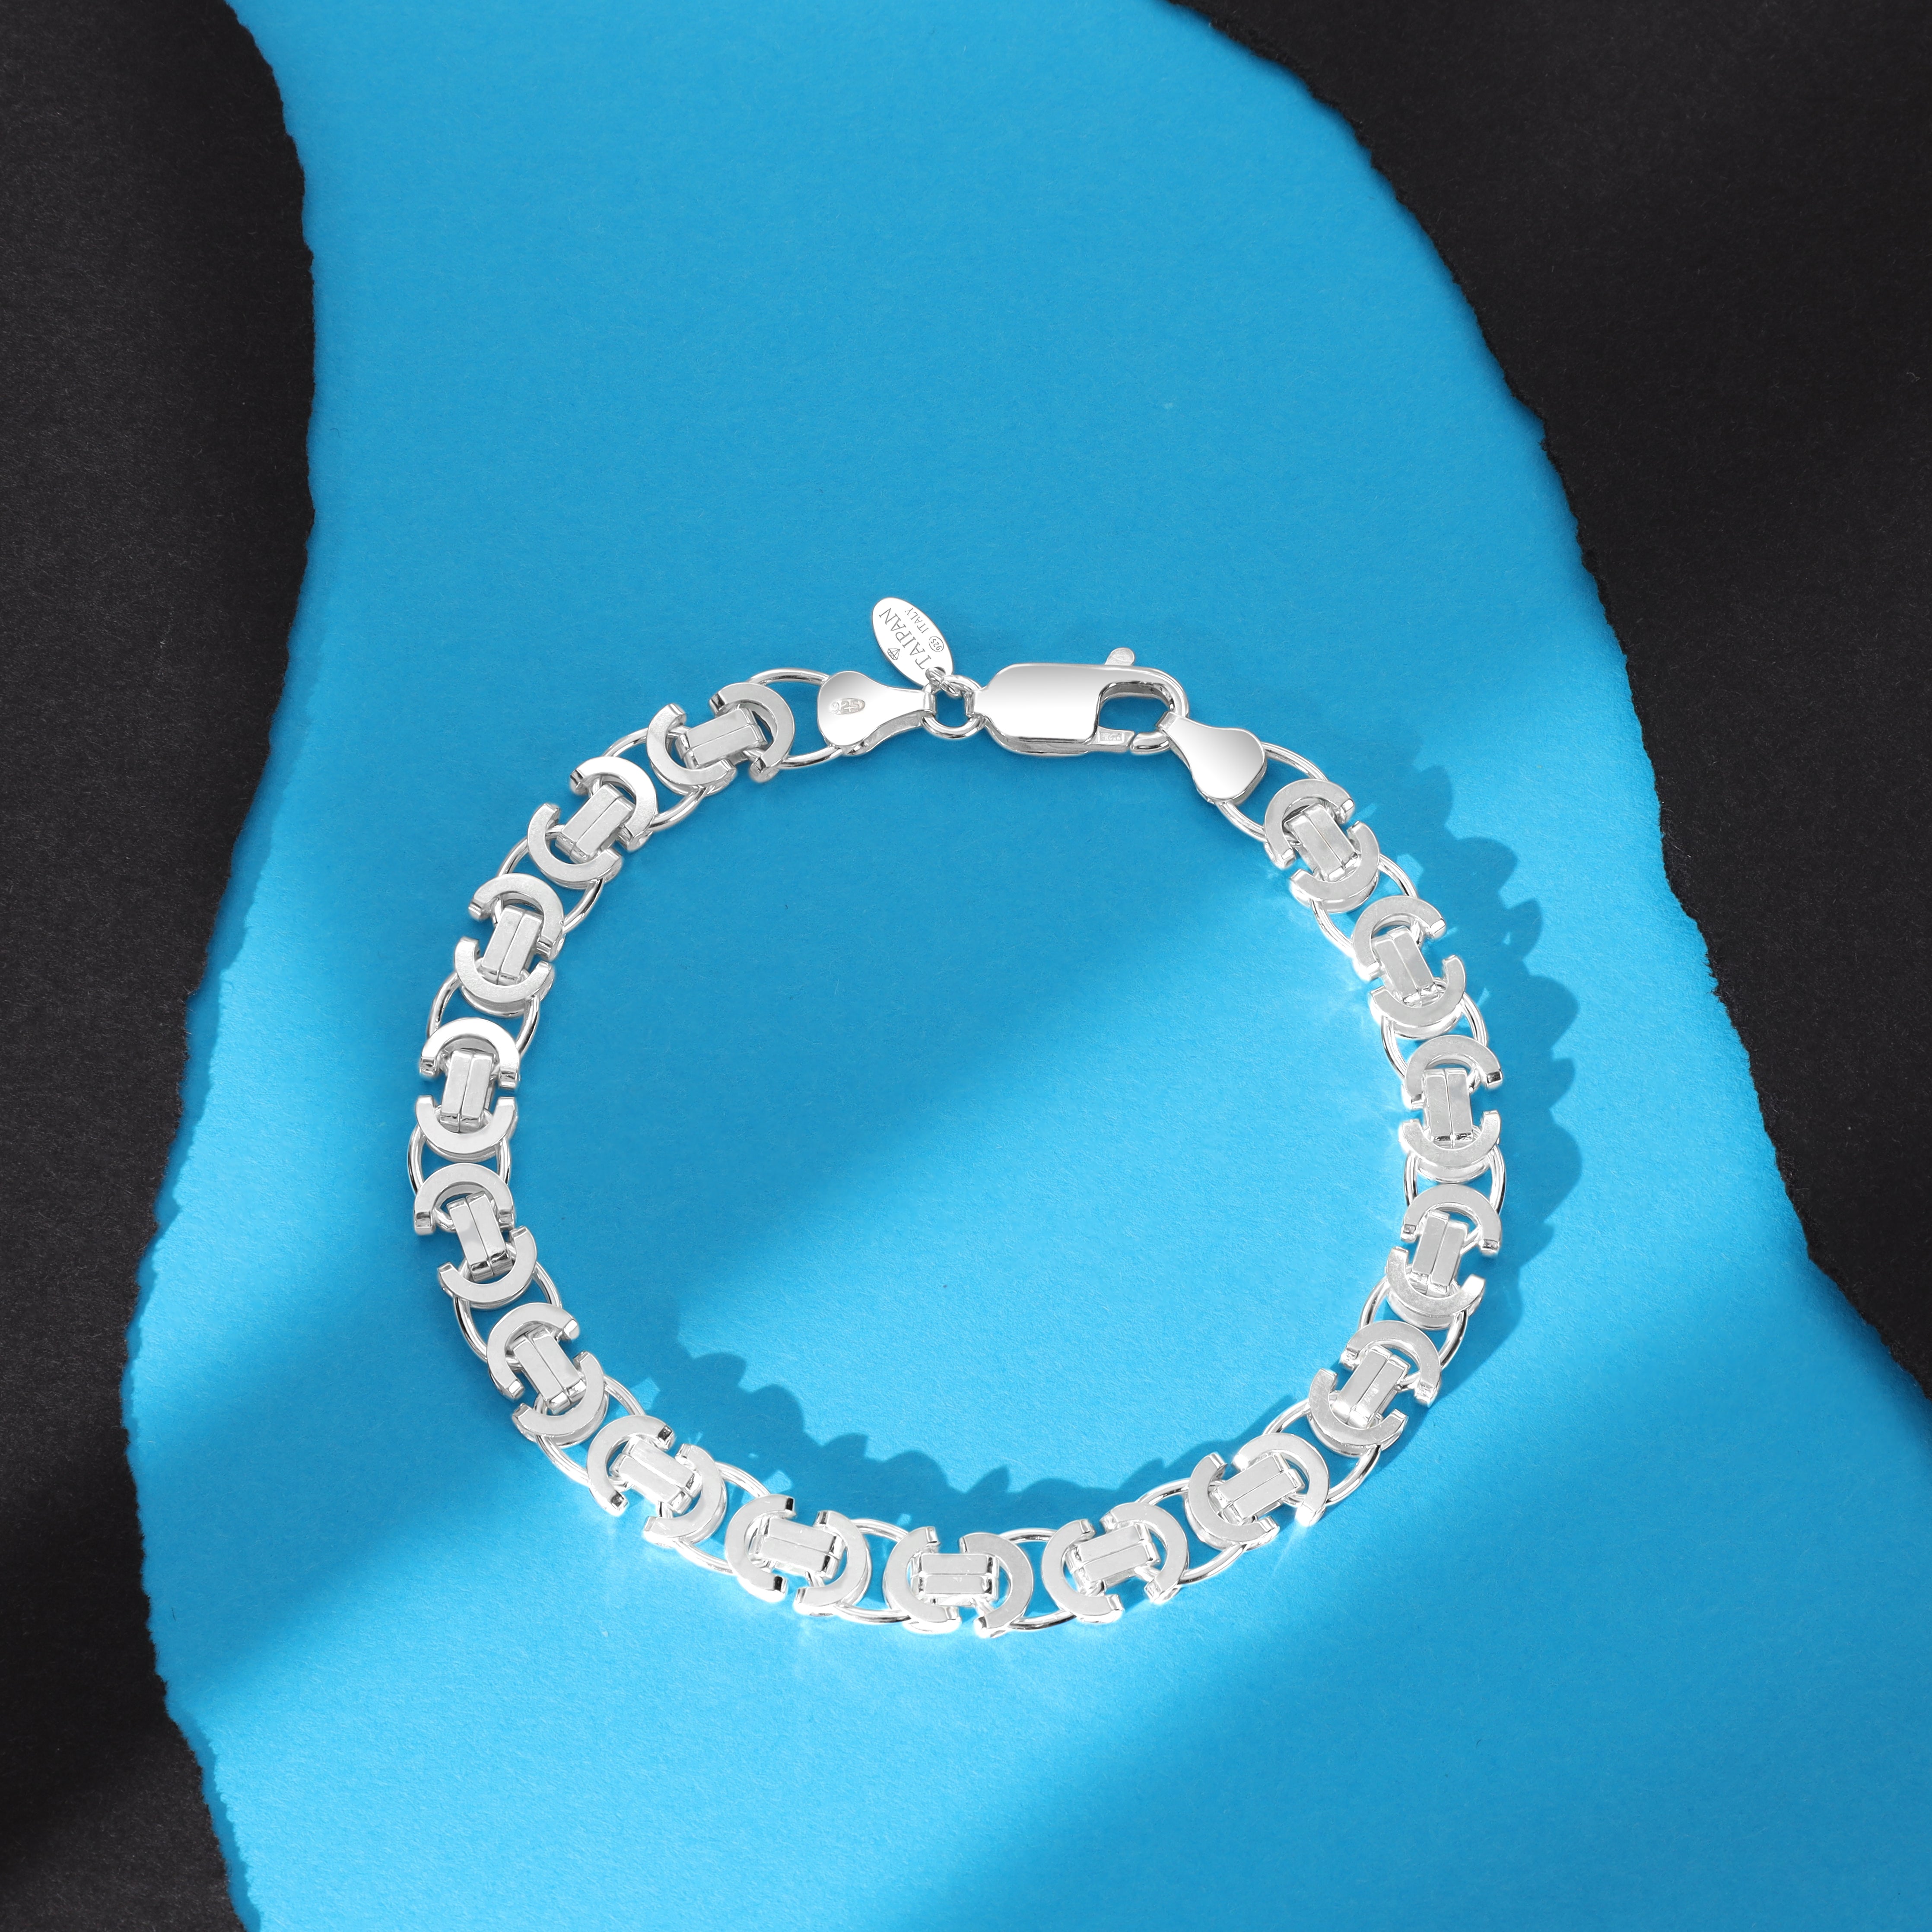 Flache Königskette Armband Etrusker Kette 7,3mm breit 21cm lang aus 925 Sterling Silber (B332) - Taipan Schmuck